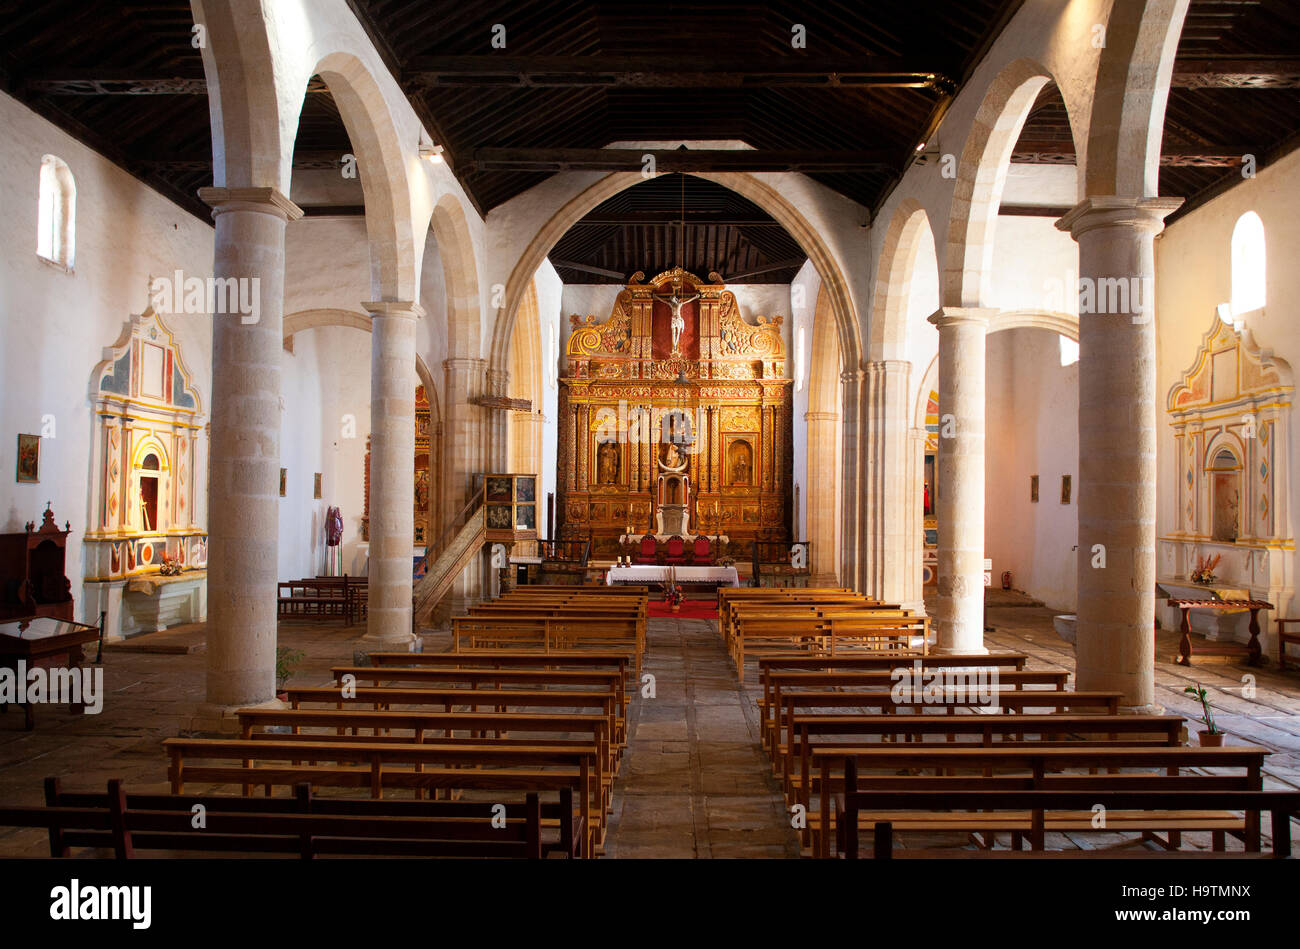 Interior, Baroque high altar, Cathedral of Santa Maria de Betancuria, Betancuria, Fuerteventura, Canary Islands, Spain Stock Photo